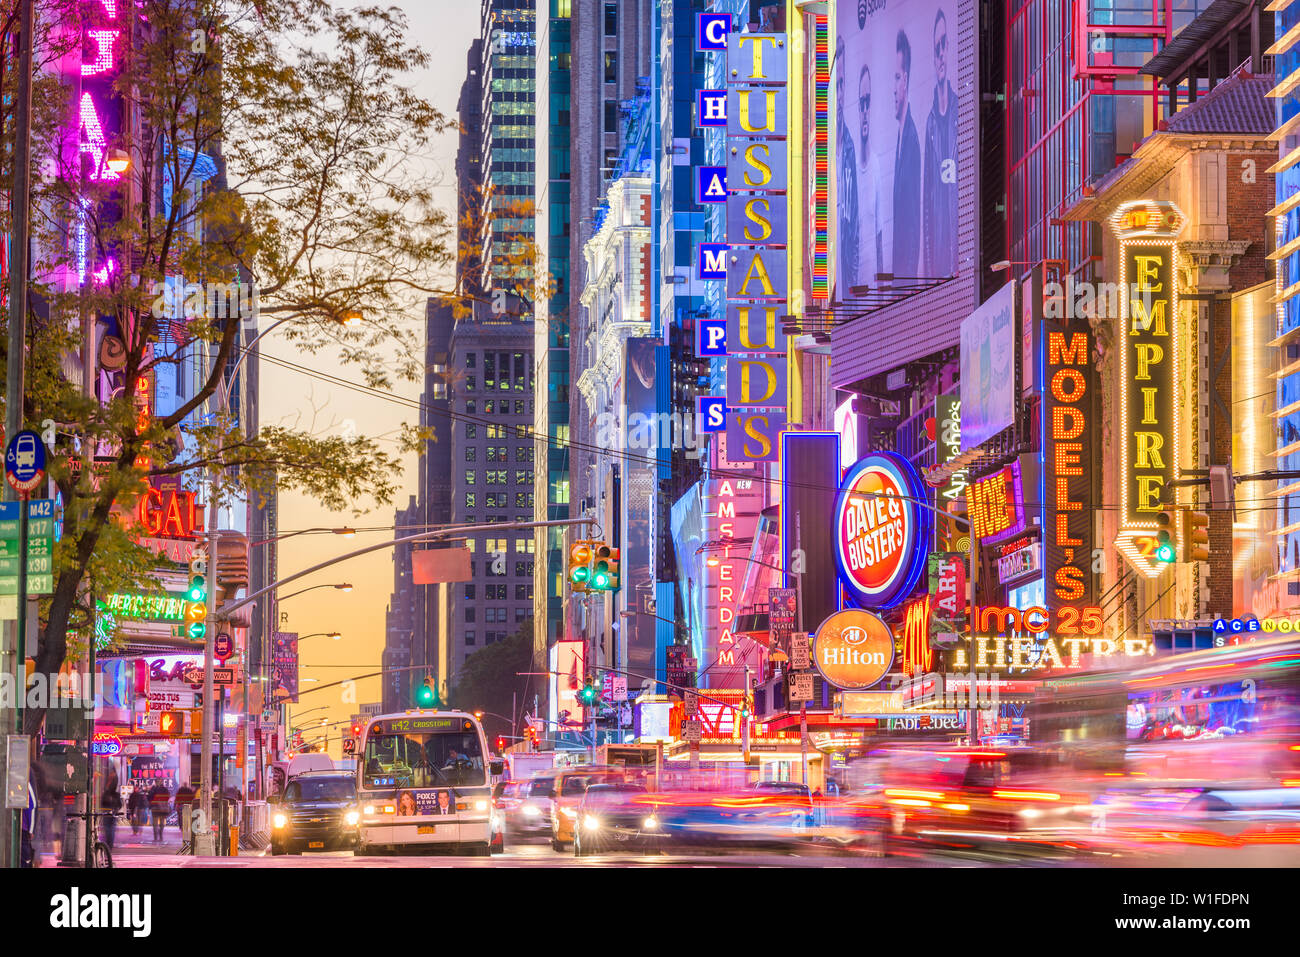 NEW YORK CITY - Novembre 14, 2016: il traffico si muove sotto le insegne della 42nd Street. Il Landmark street è sede di numerosi teatri, negozi, Foto Stock